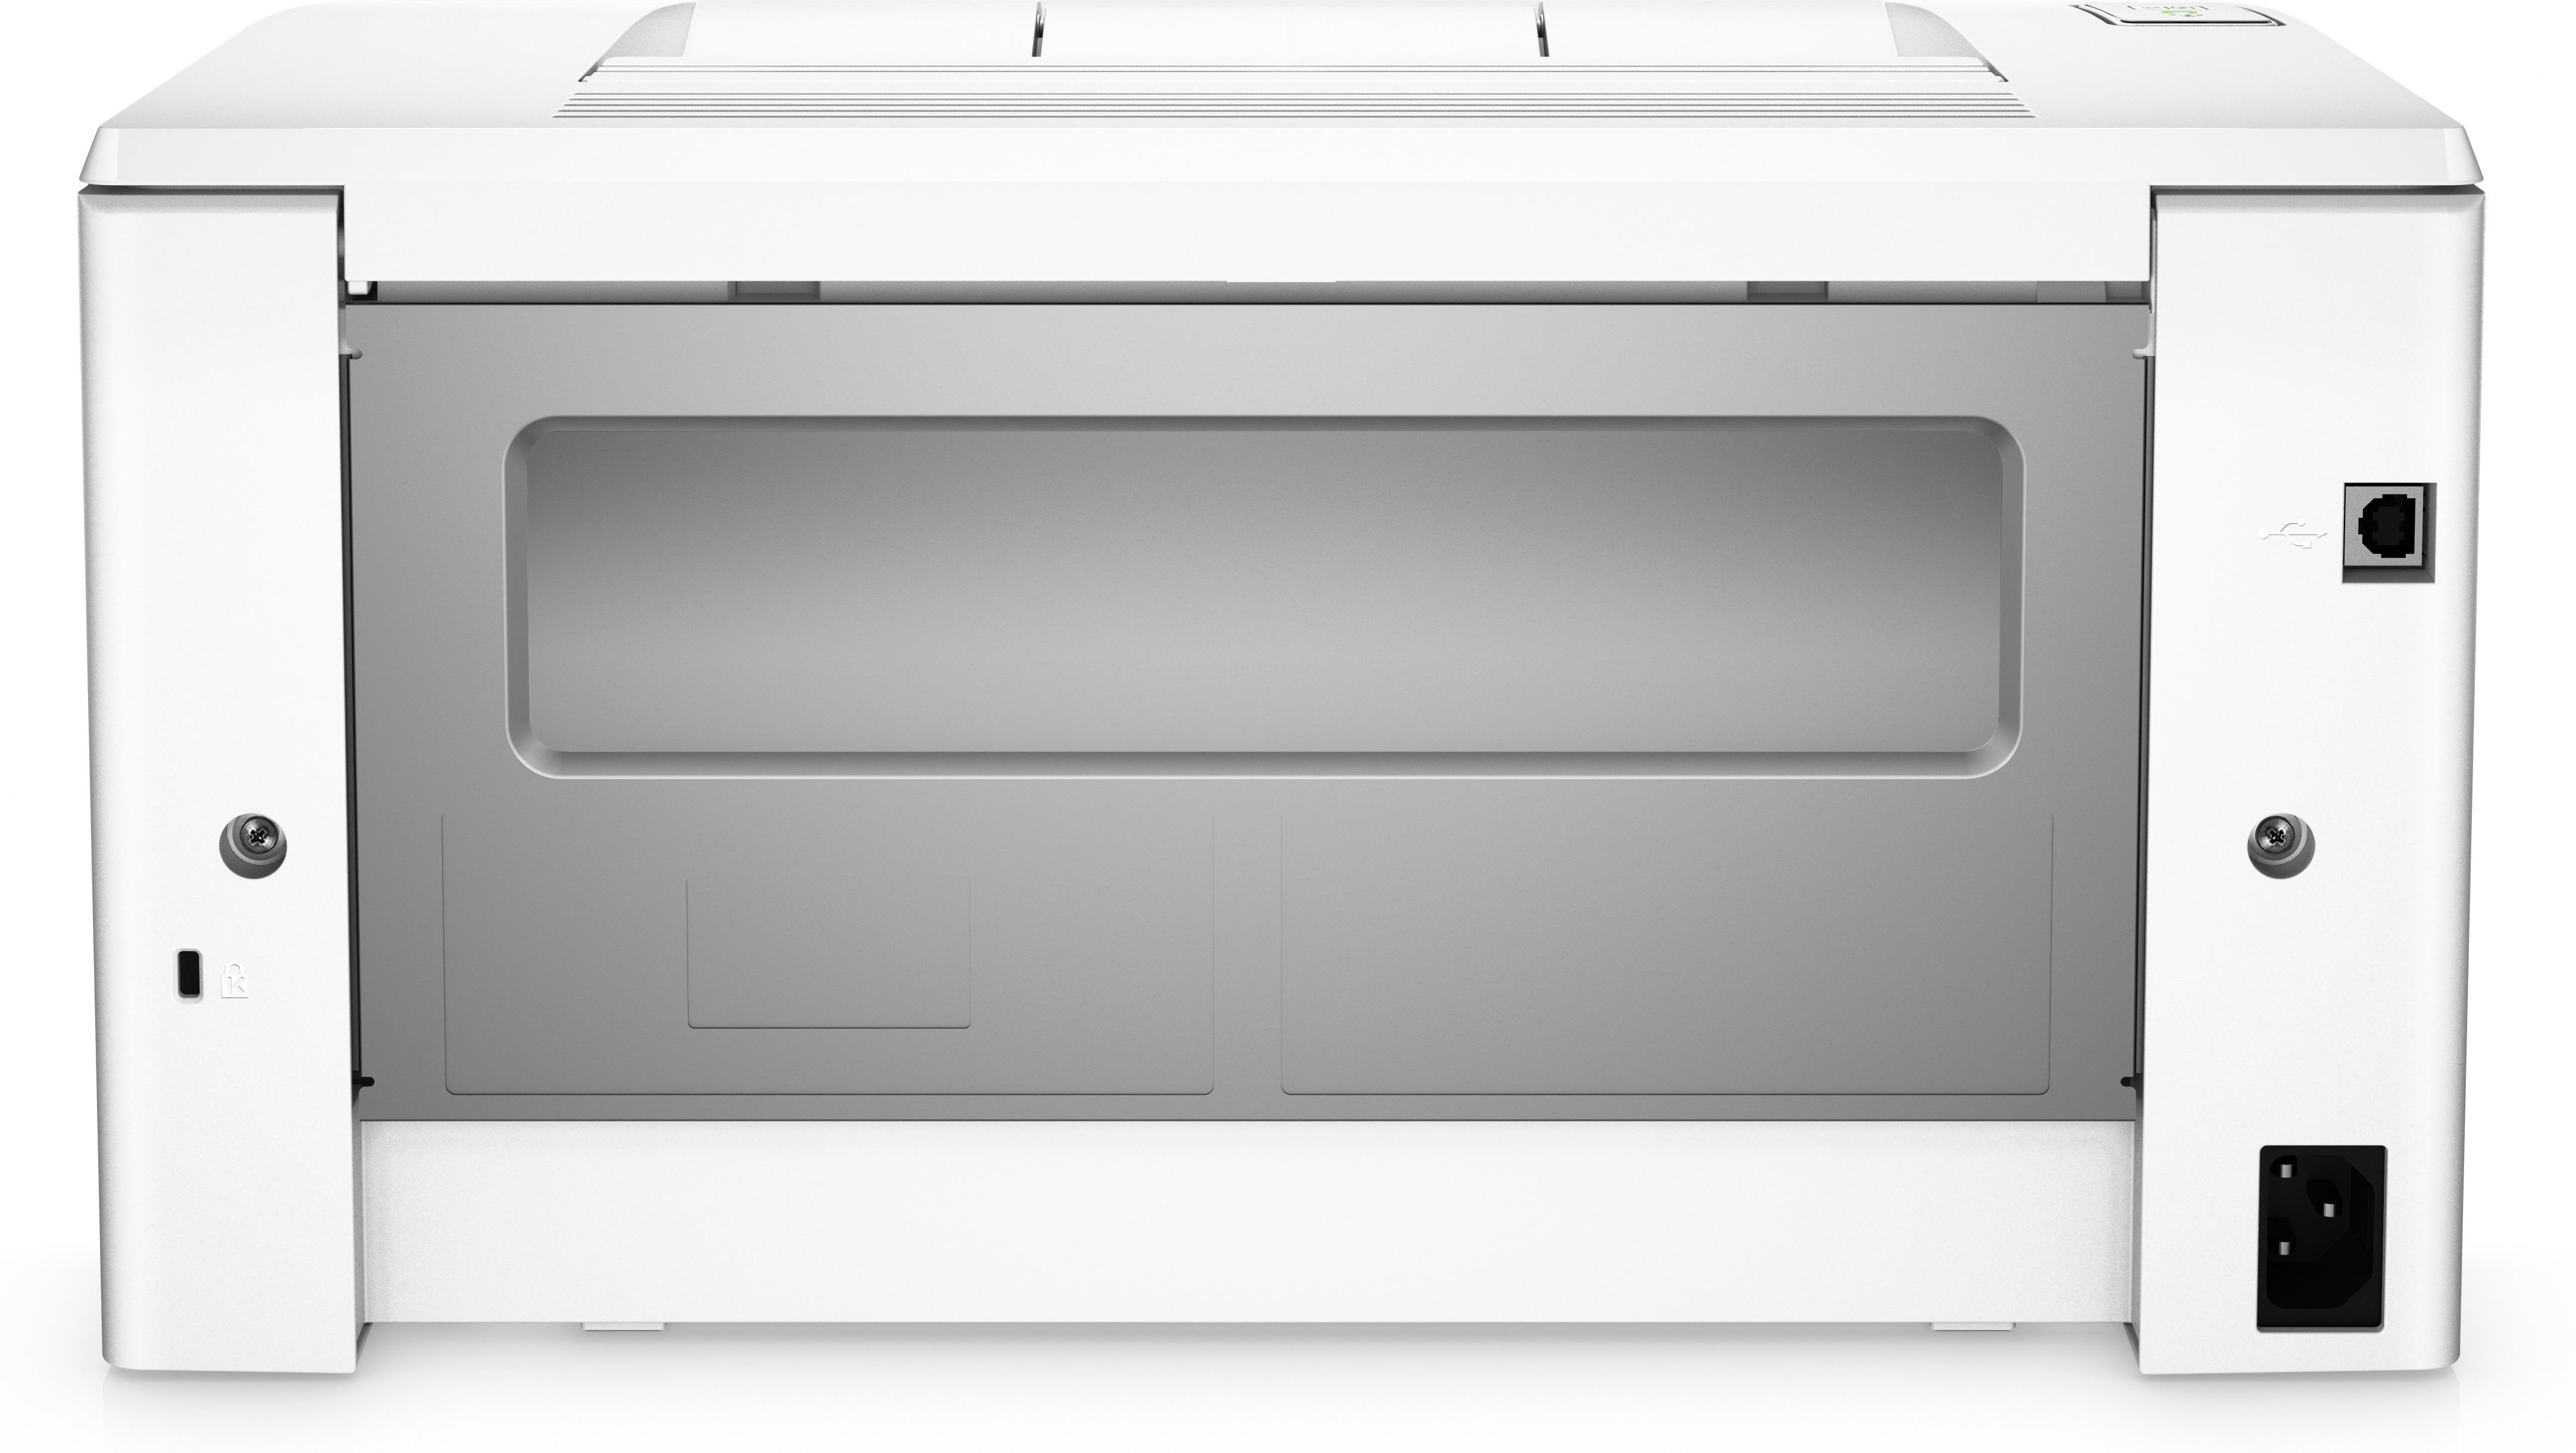 LaserJet Pro M102a Printer